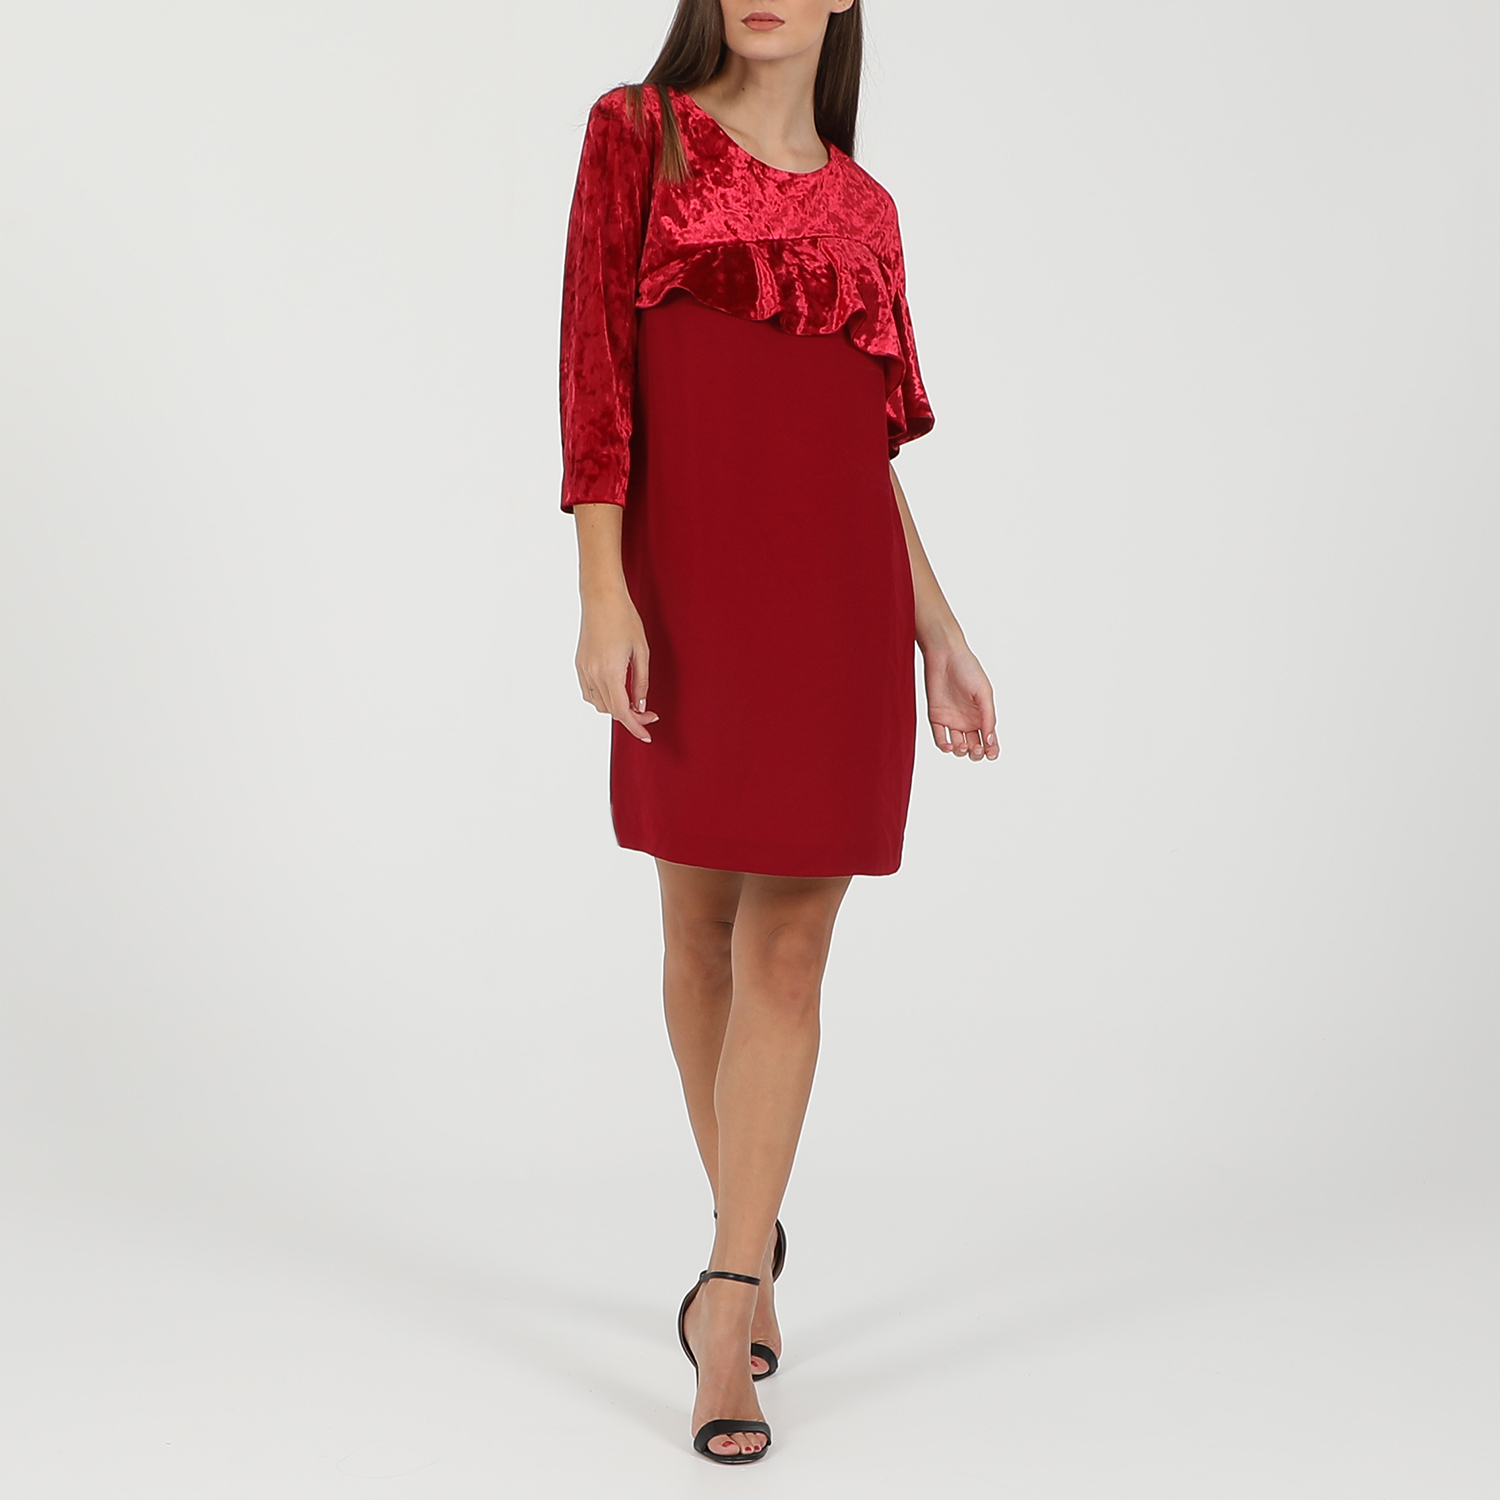 ANNARITA – Γυναικείο mini φόρεμα ANNARITA κόκκινο